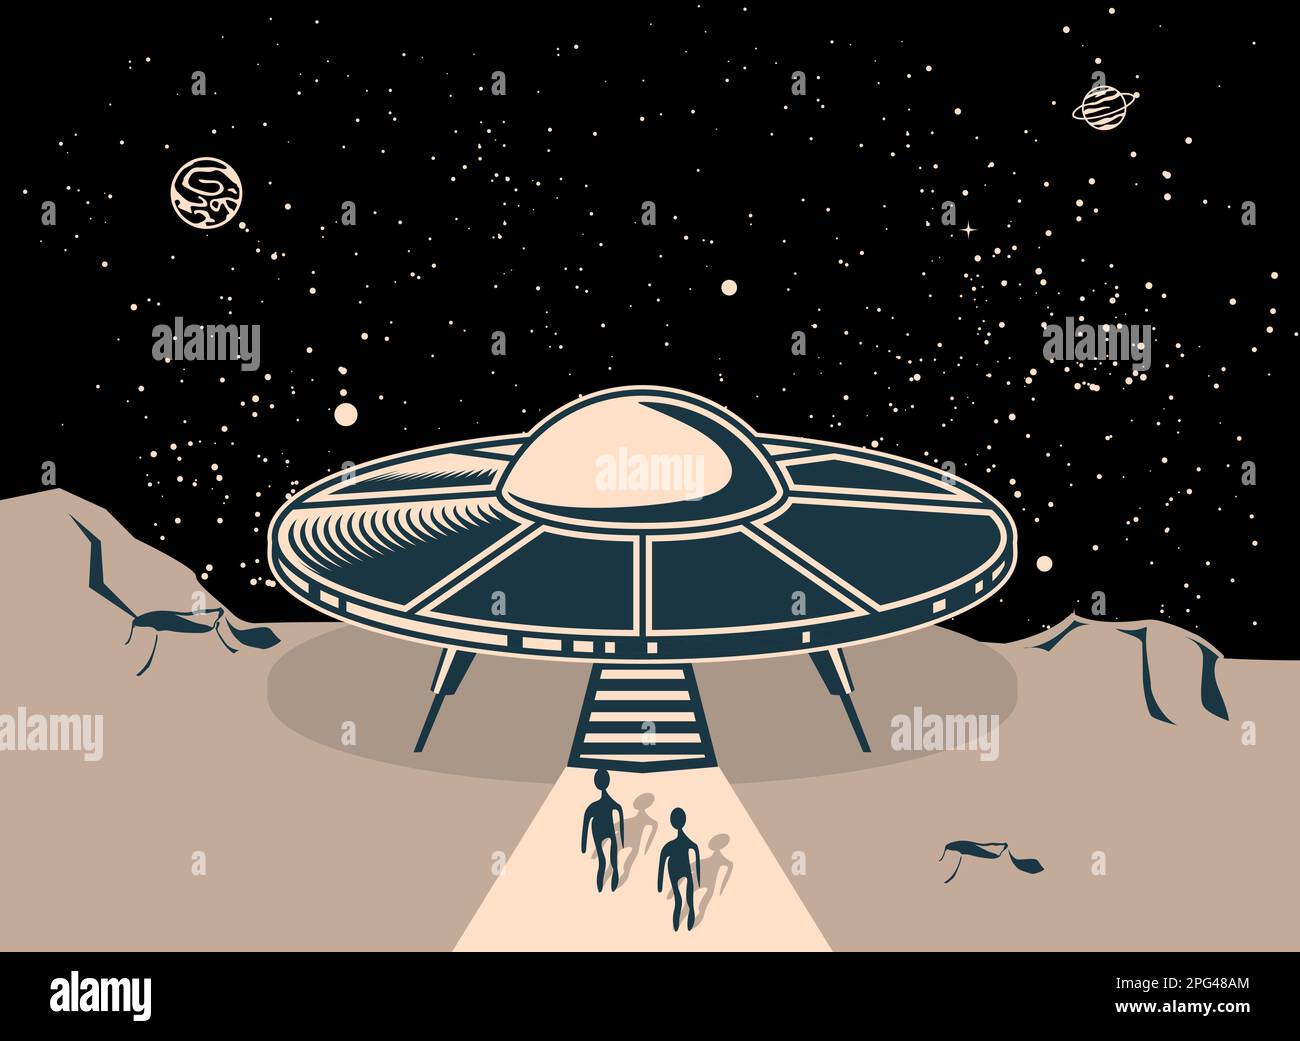 UFO fliegende Untertasse, auf dem Planeten gelandet, zwei ausschiffte Aliens, ufo-Diskette in Kosmos, Vektor Stock Vektor